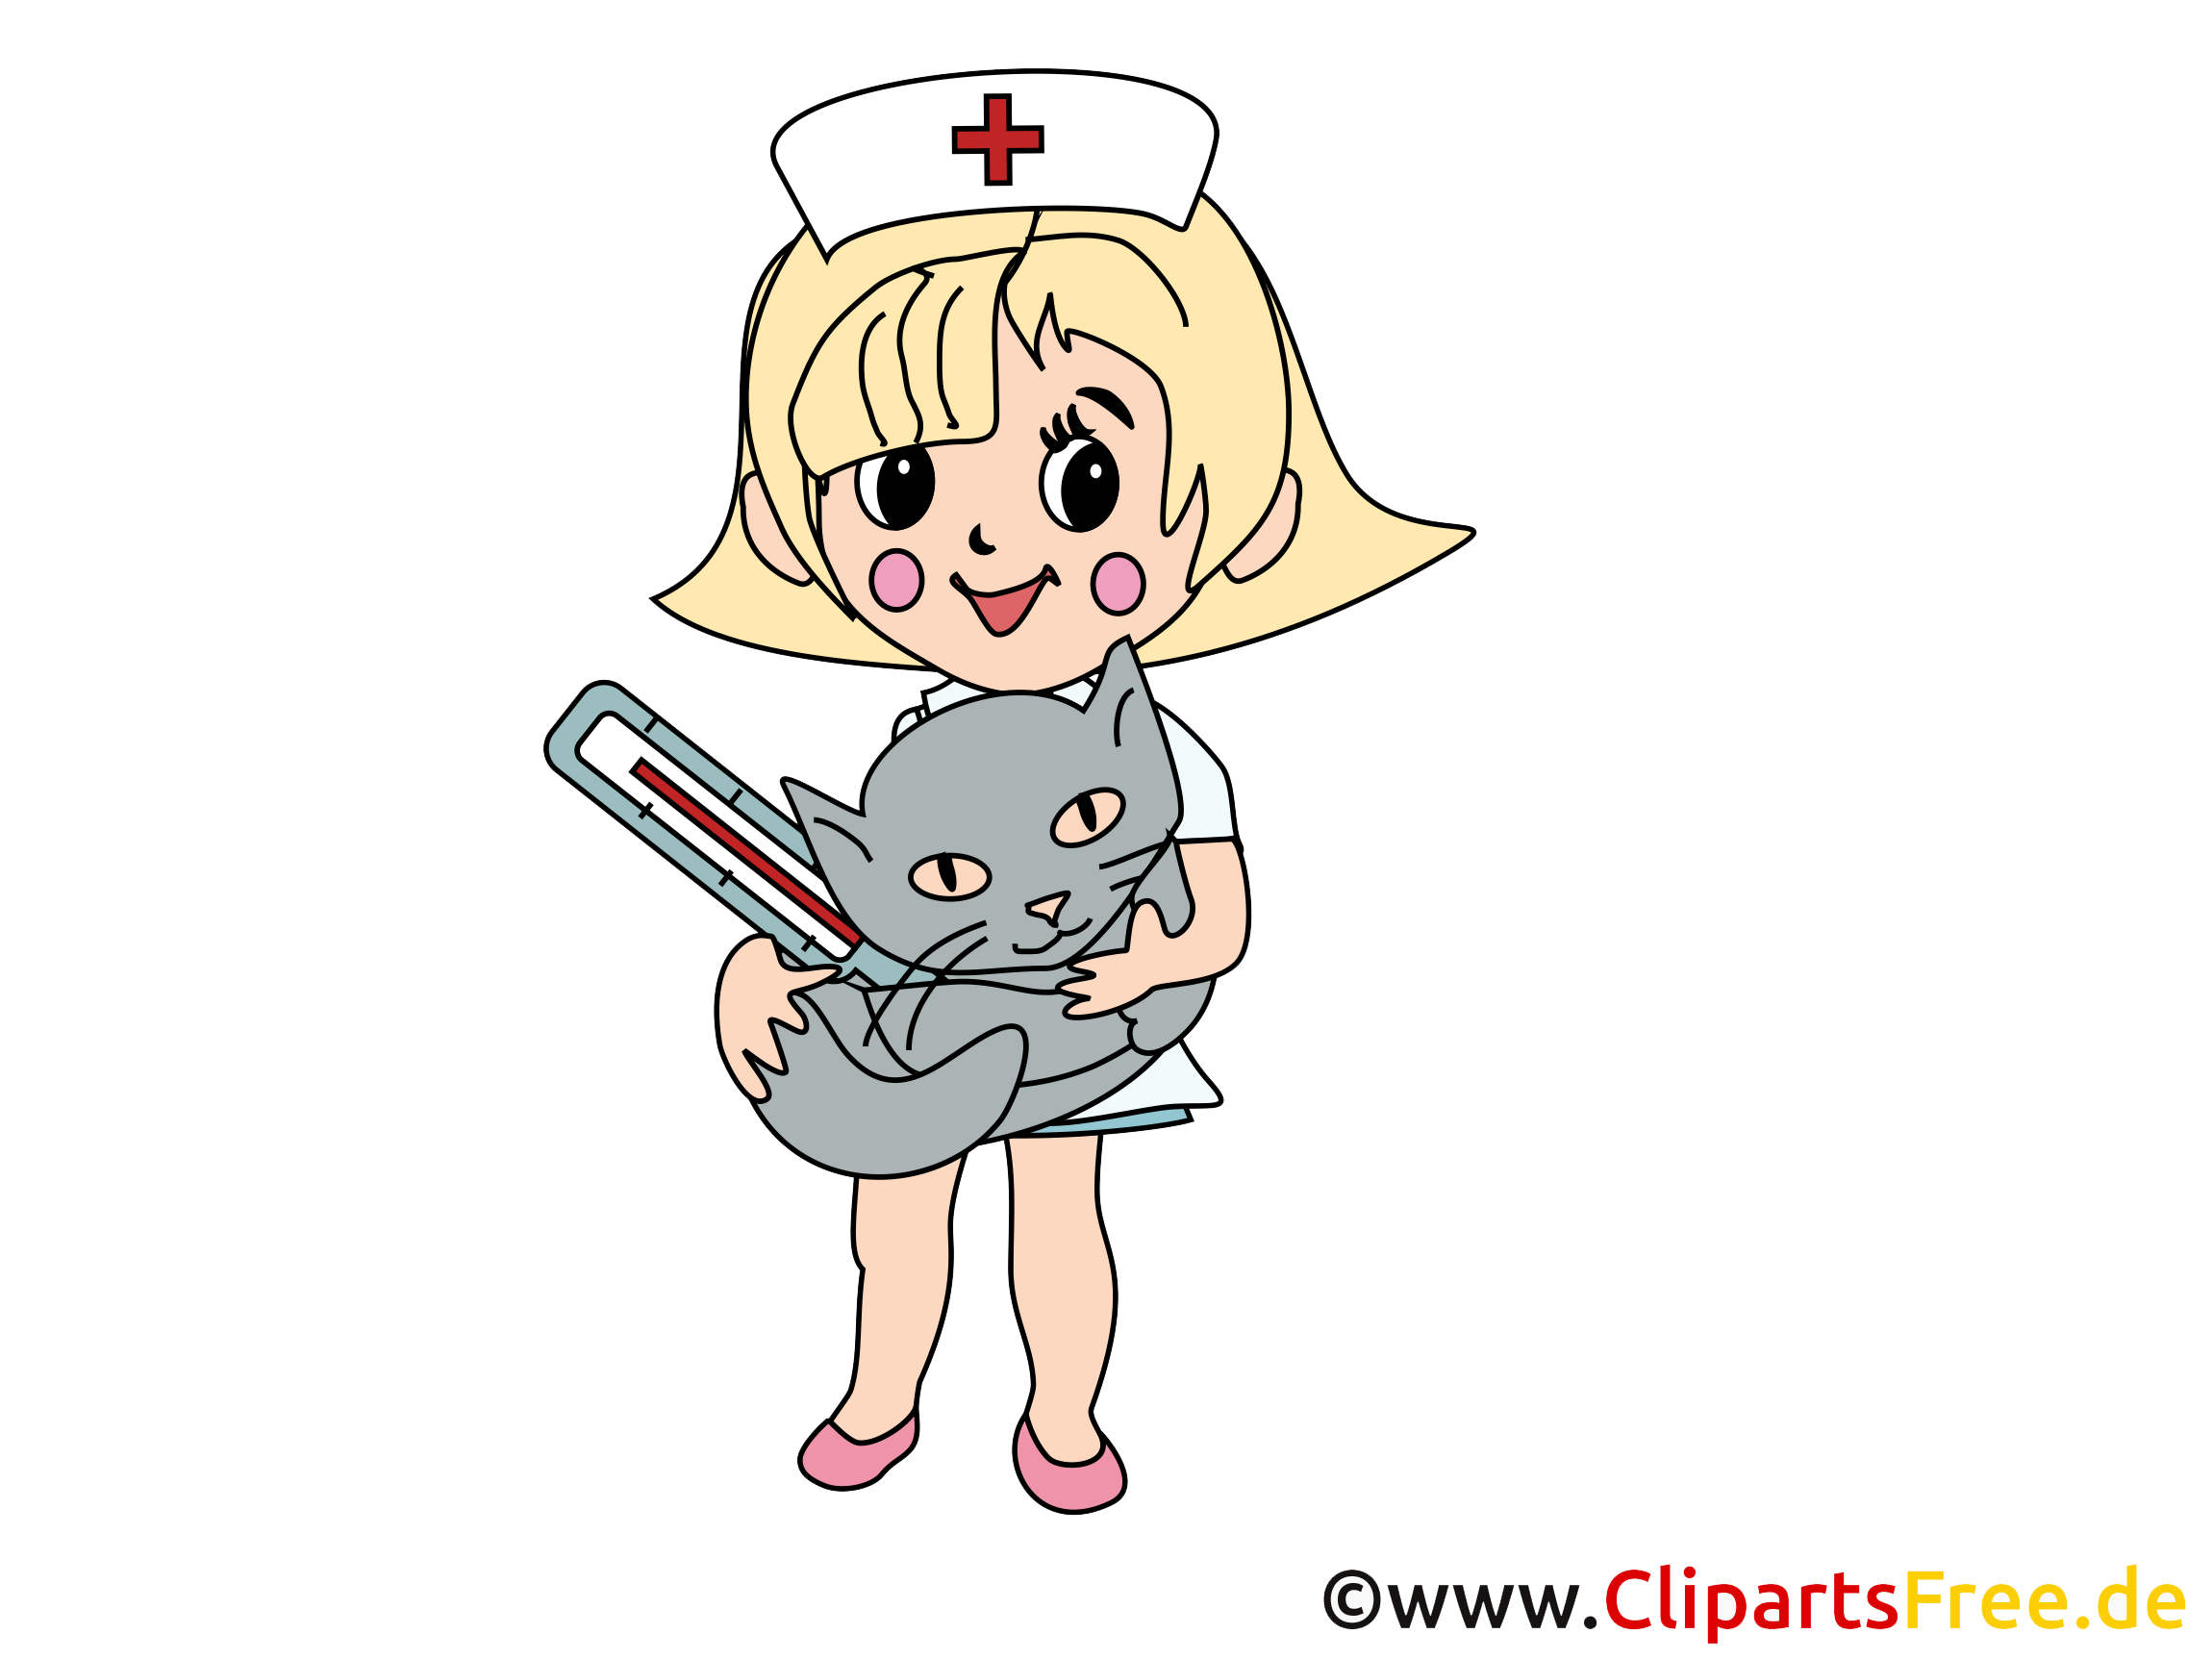 Cliparts infirmière gratuis - Médecine images